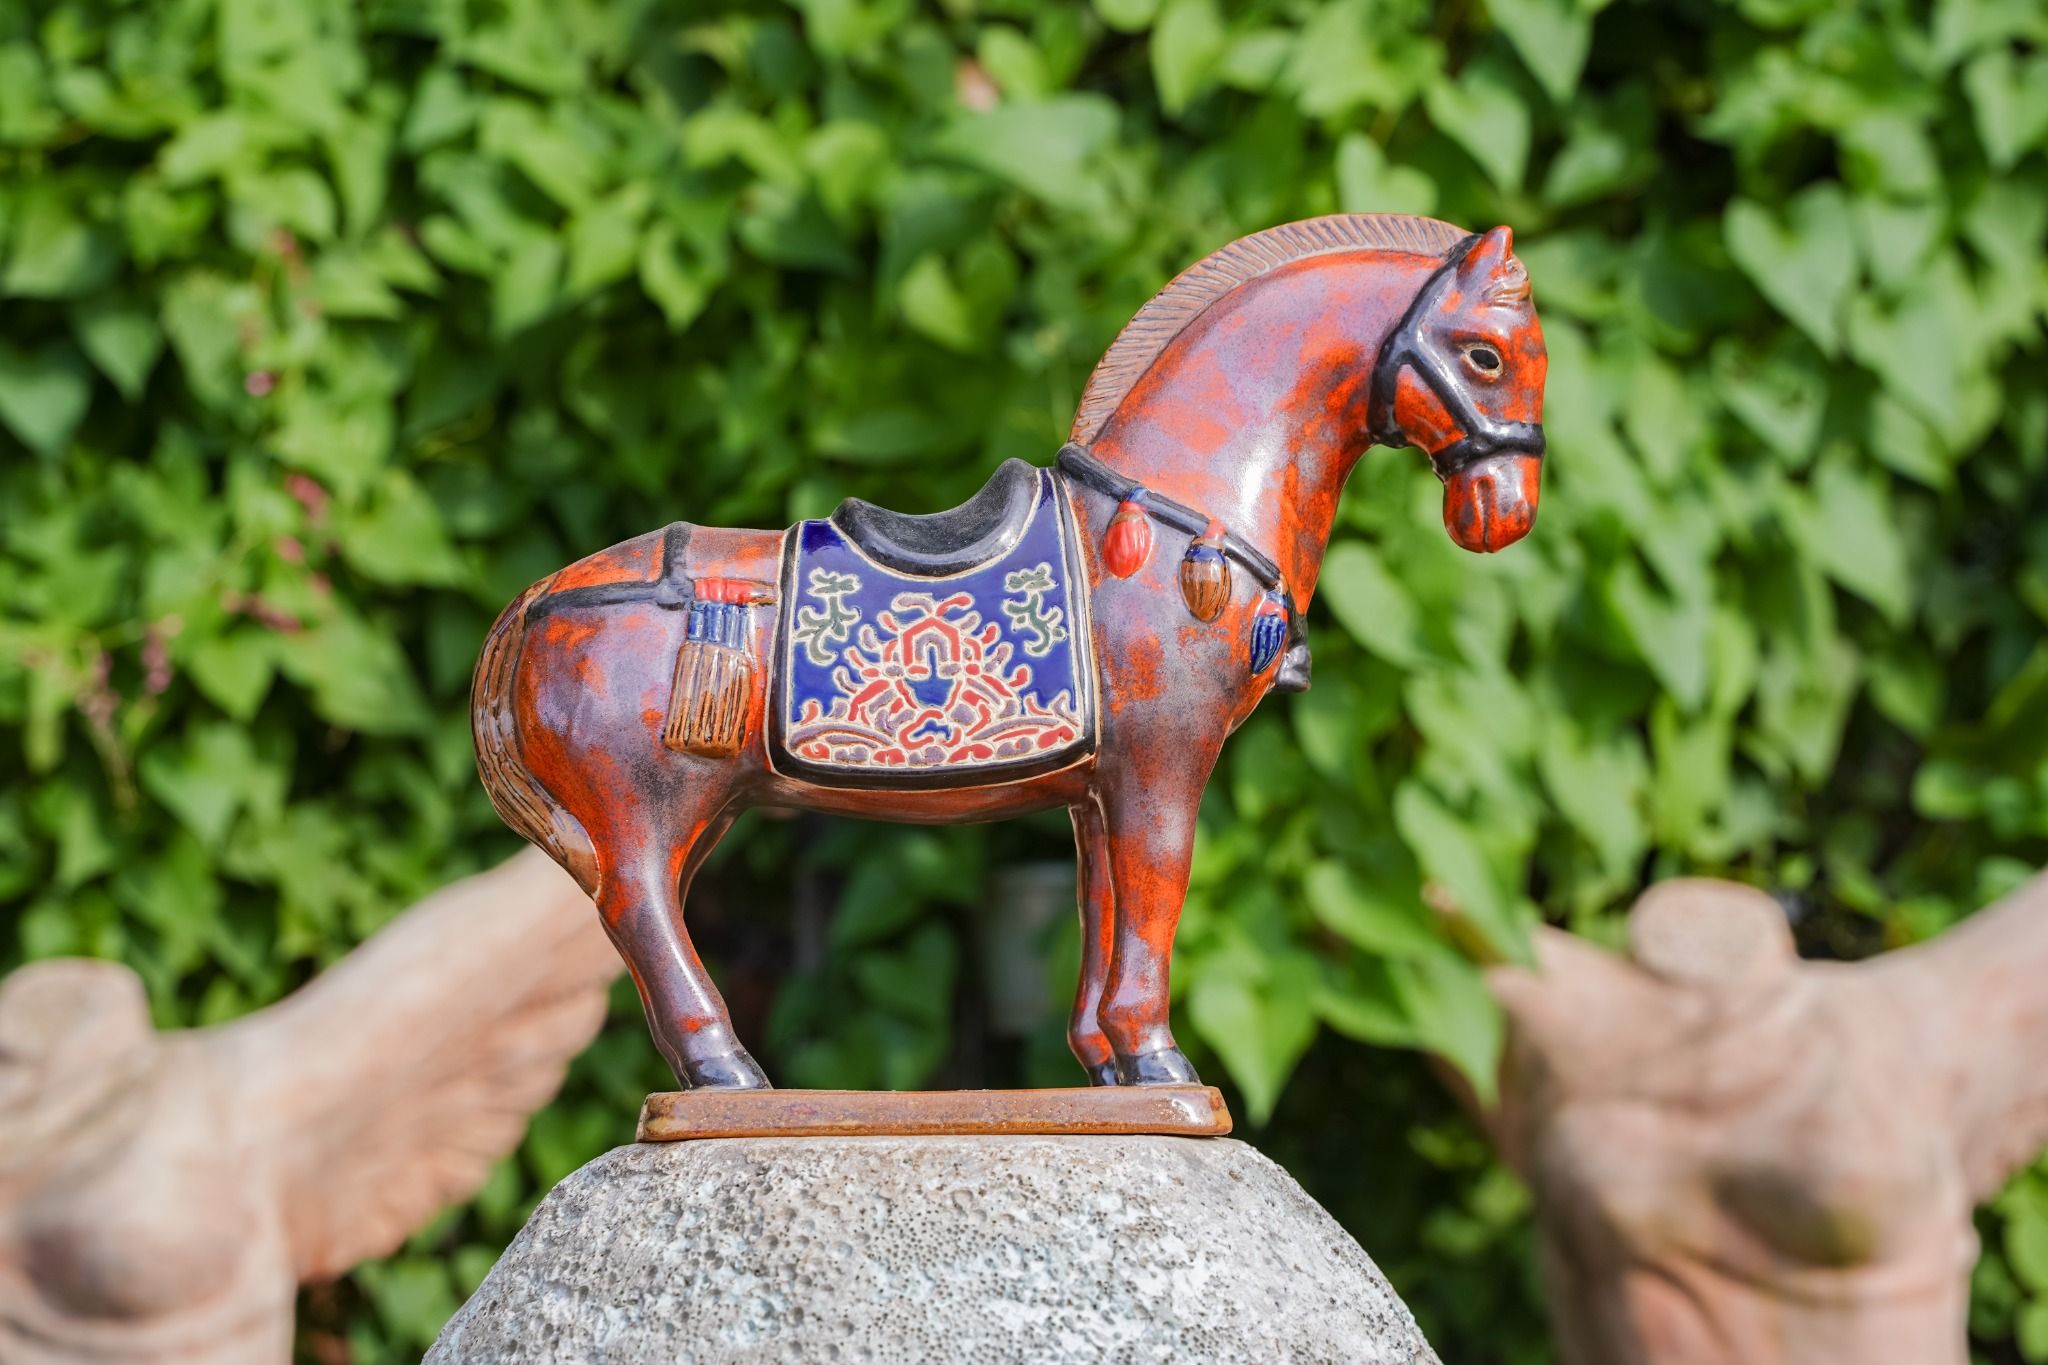  Ngựa gốm men đỏ loang đen, khắc thủ công hoa văn Cổ phục Việt, gốm Thủ Biên, C17 x R25cm 